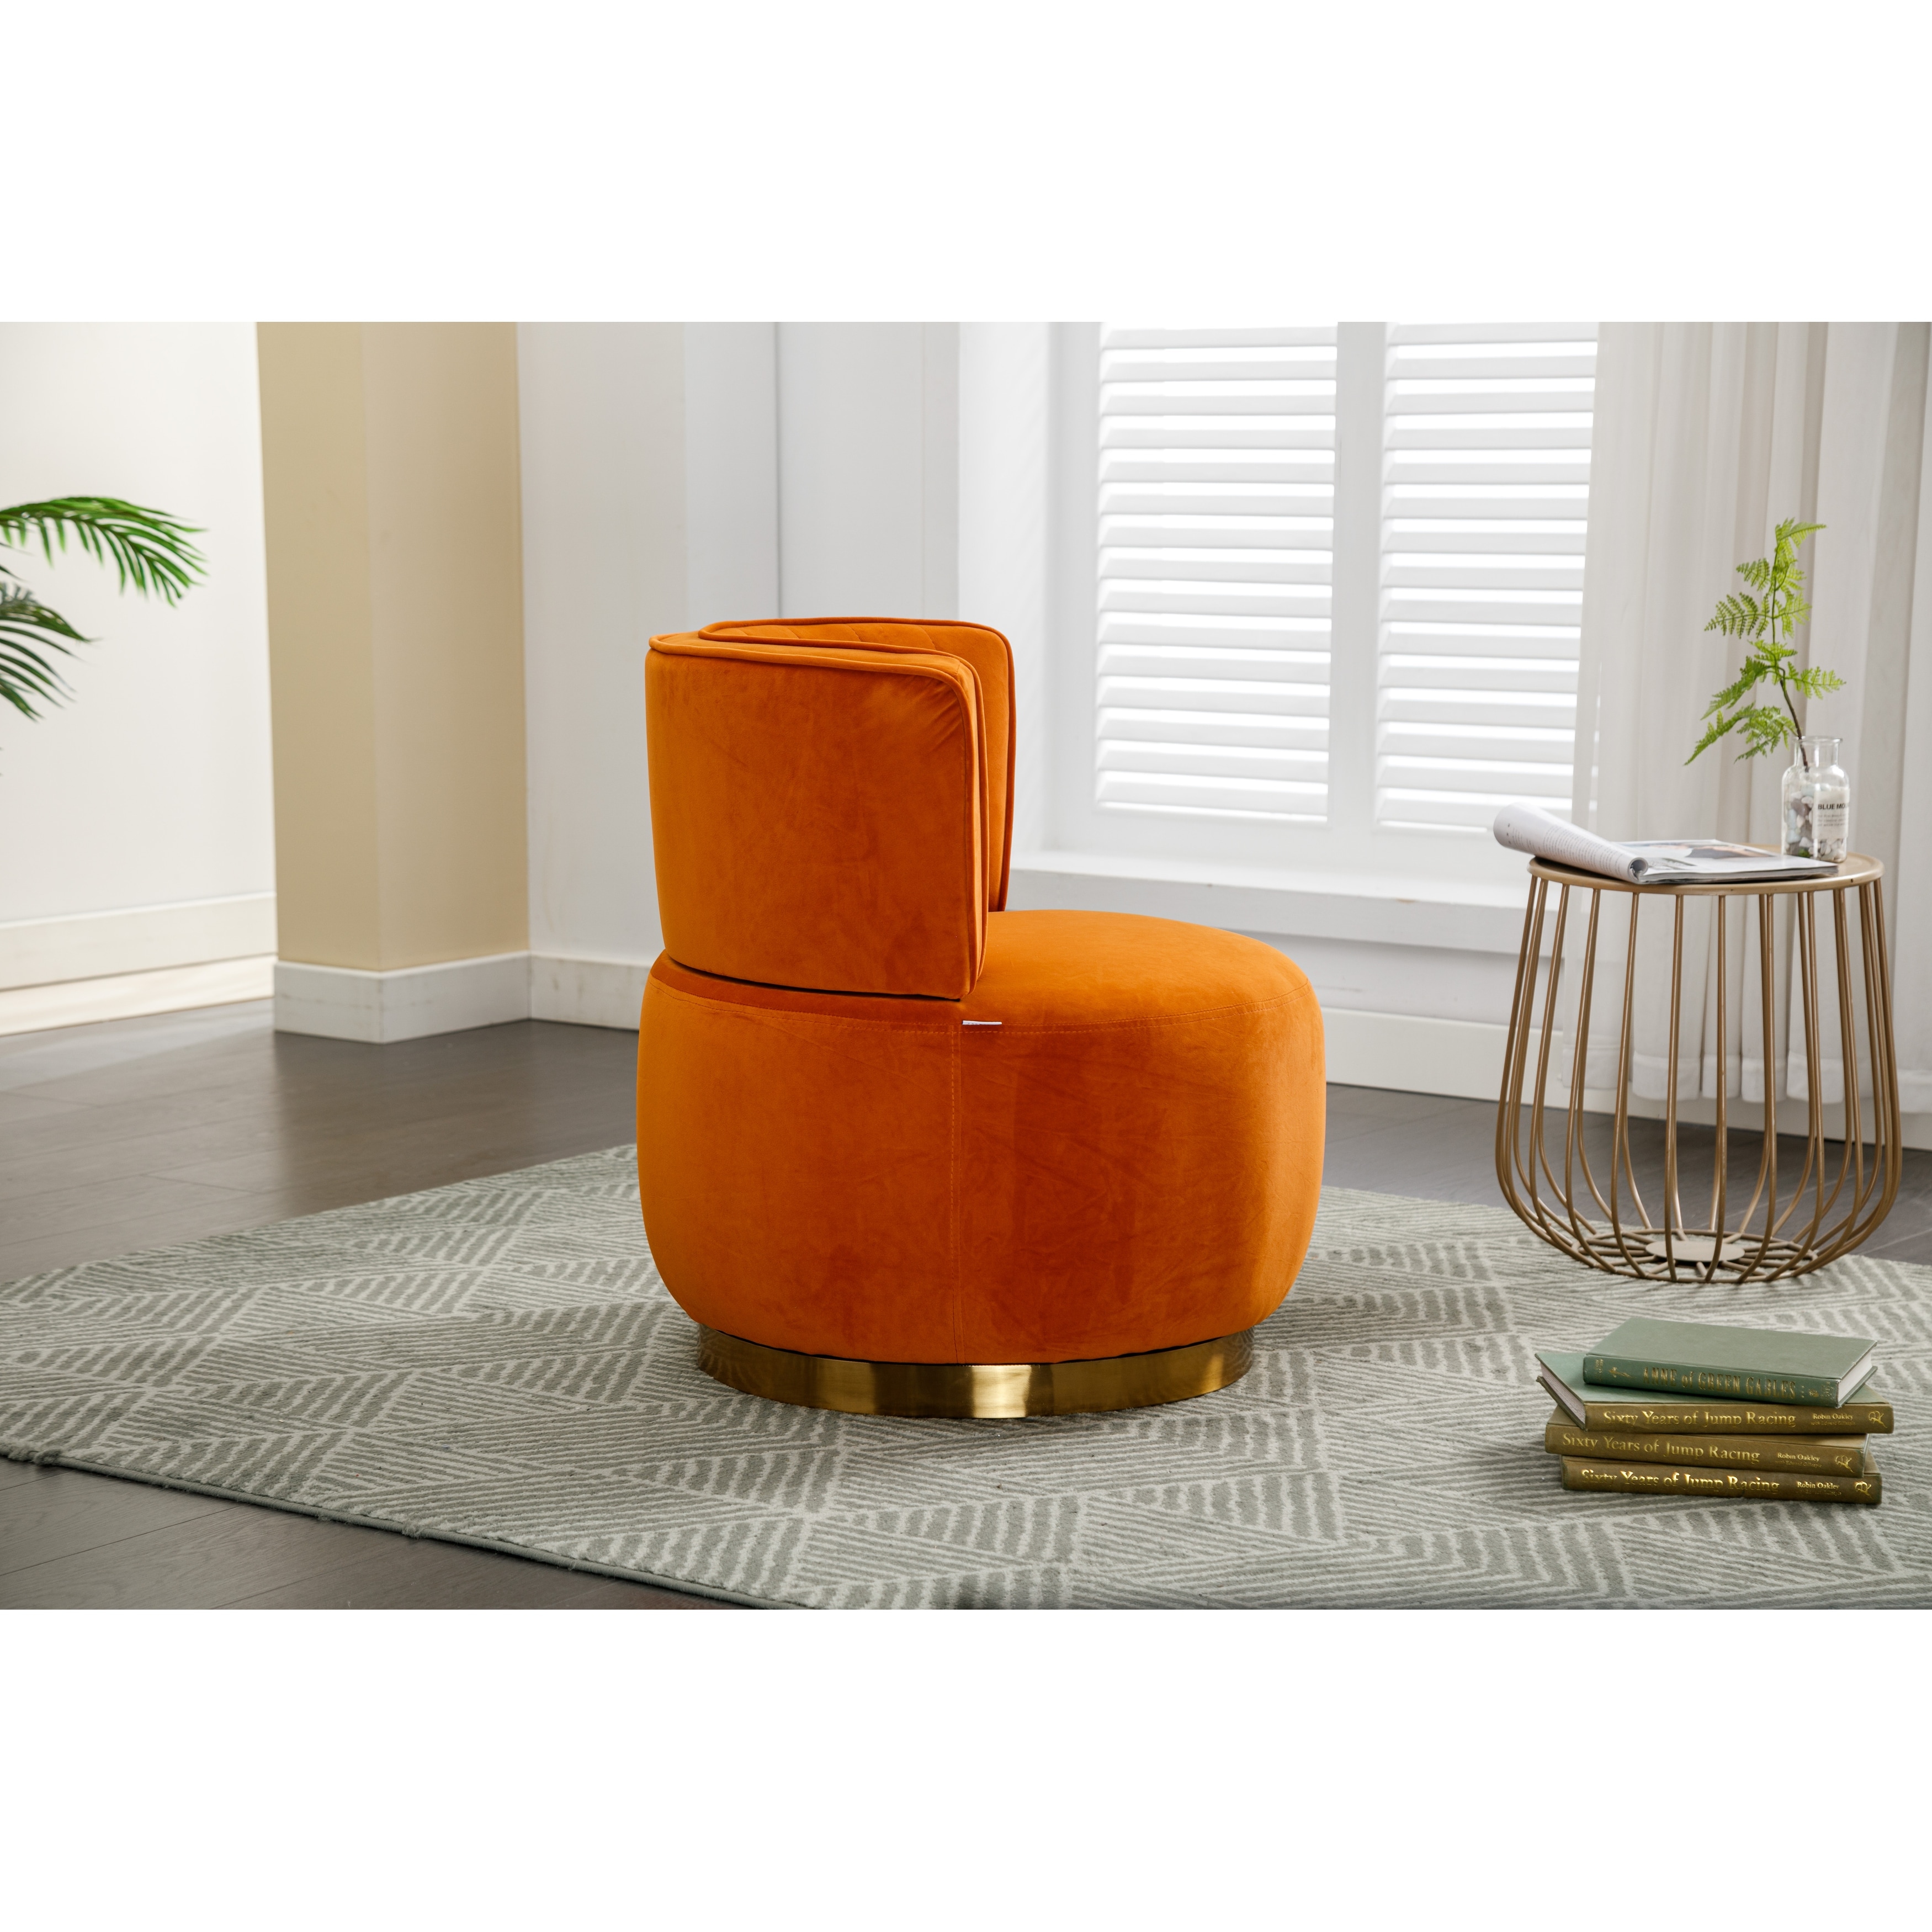 Oakley Red Leather Sofa | Fine Furniture | Adobe Interiors